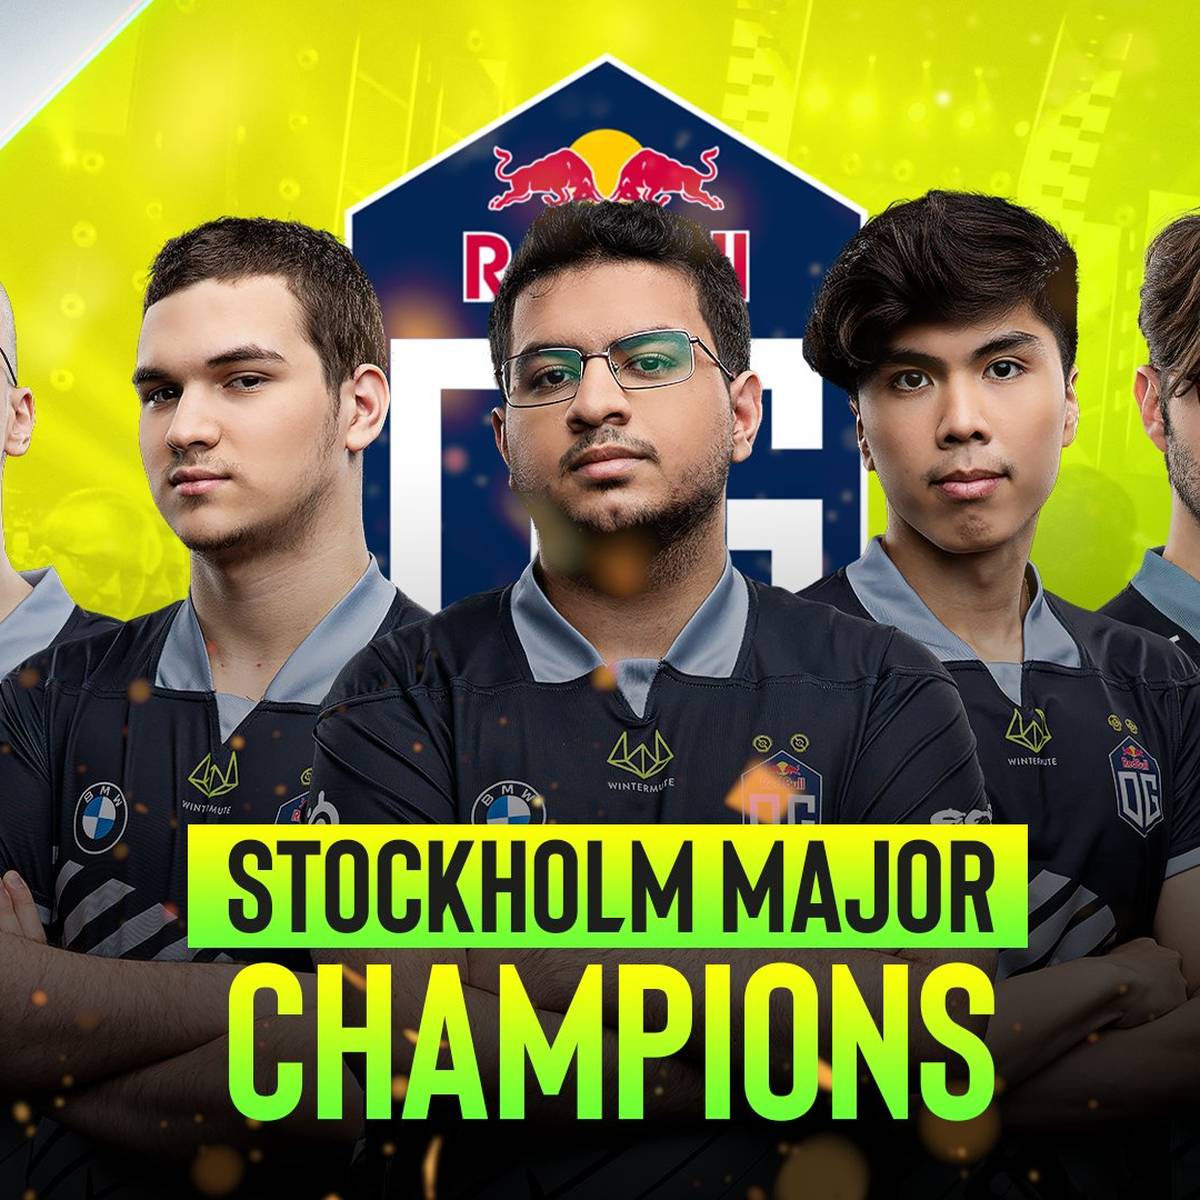 OG krönt sich zum Champion des ESL One Stockholm Majors 2022. Spektakulär und dominant sichert sich der Dota 2 Rekordweltmeister seinen fünften Major-Titel. Wir skizzieren ihren Erfolgsweg.